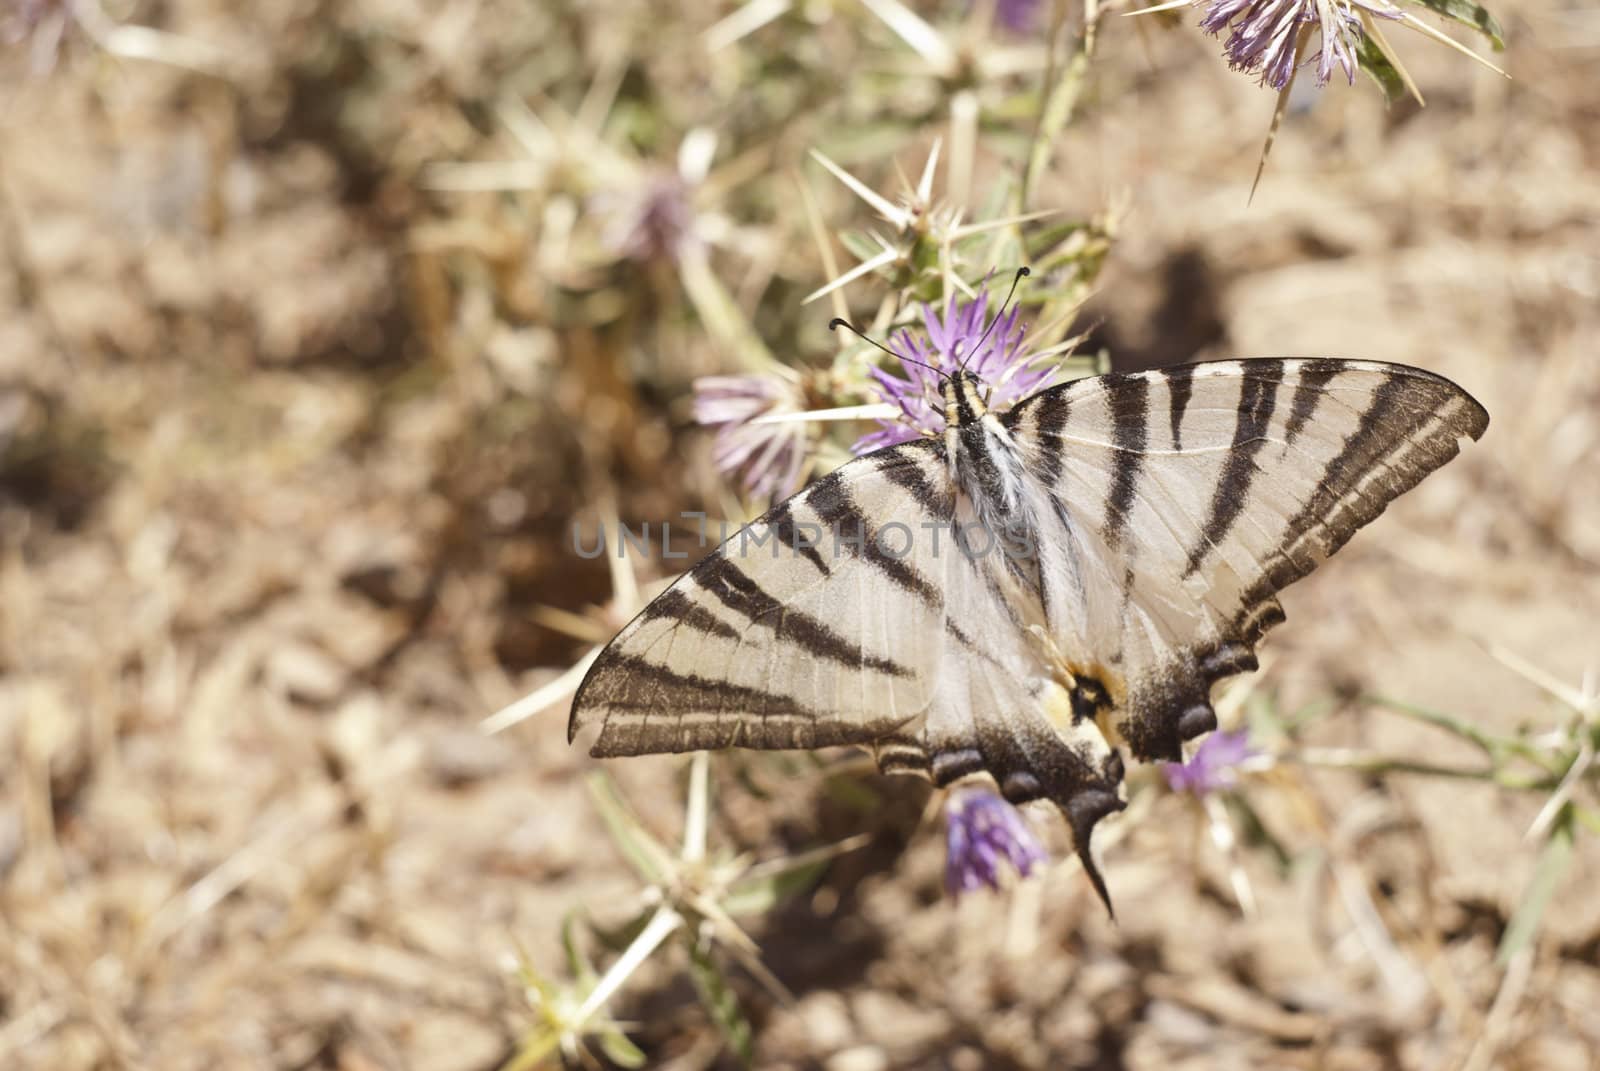 Butterfly on a flower in sicilian countryside by gandolfocannatella